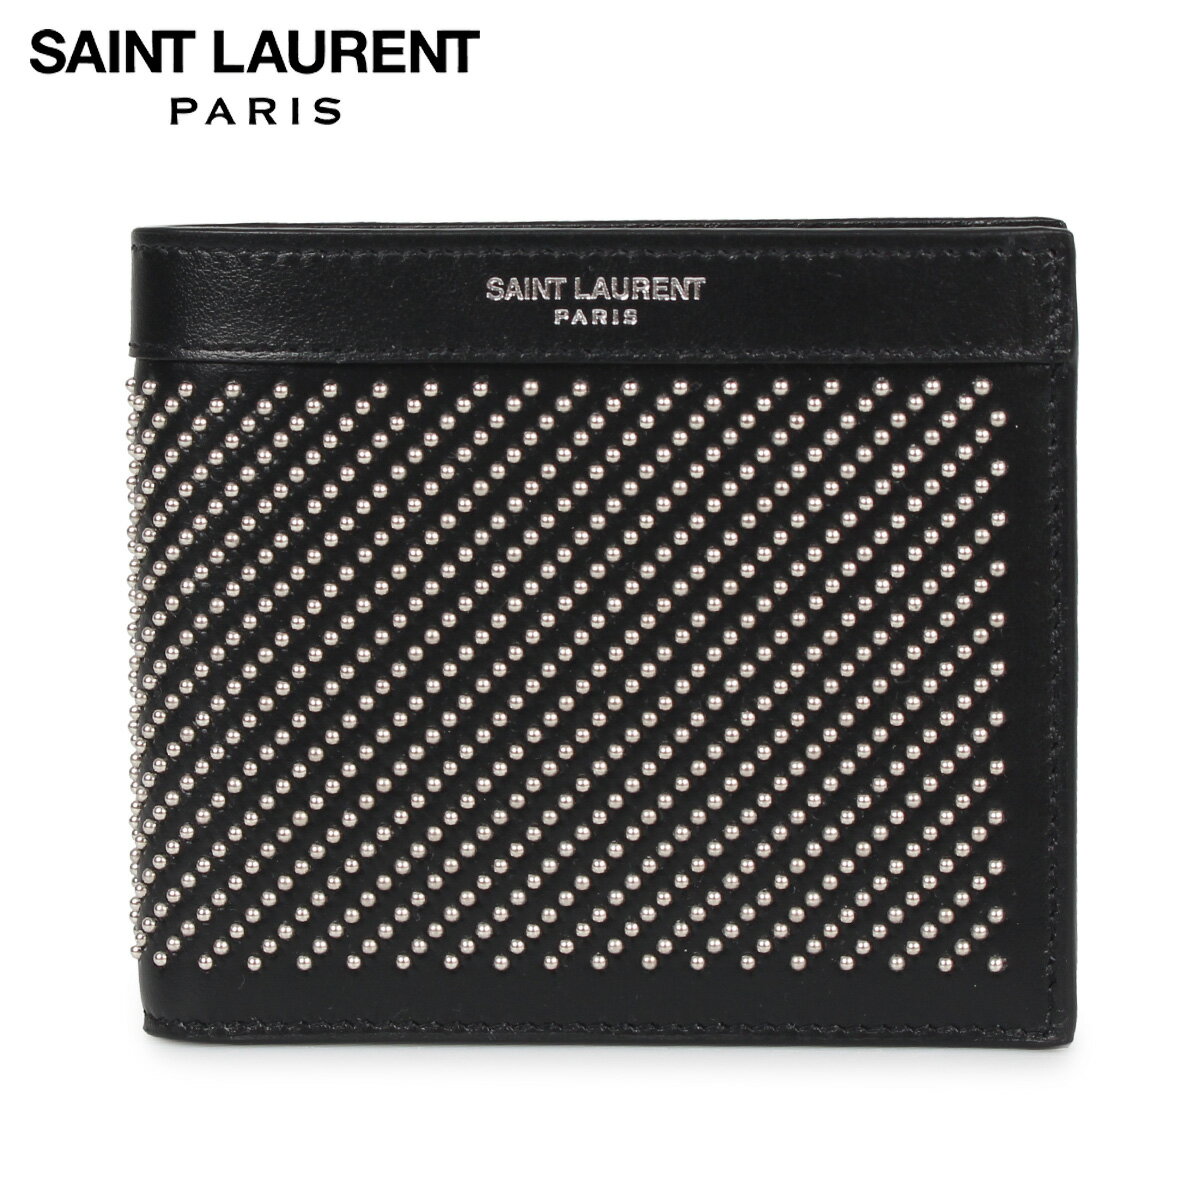 サンローラン パリ SAINT LAURENT PARIS 財布 二つ折り メンズ STUD-EMBELLISHED WALLET ブラック 黒 3613200VGUE